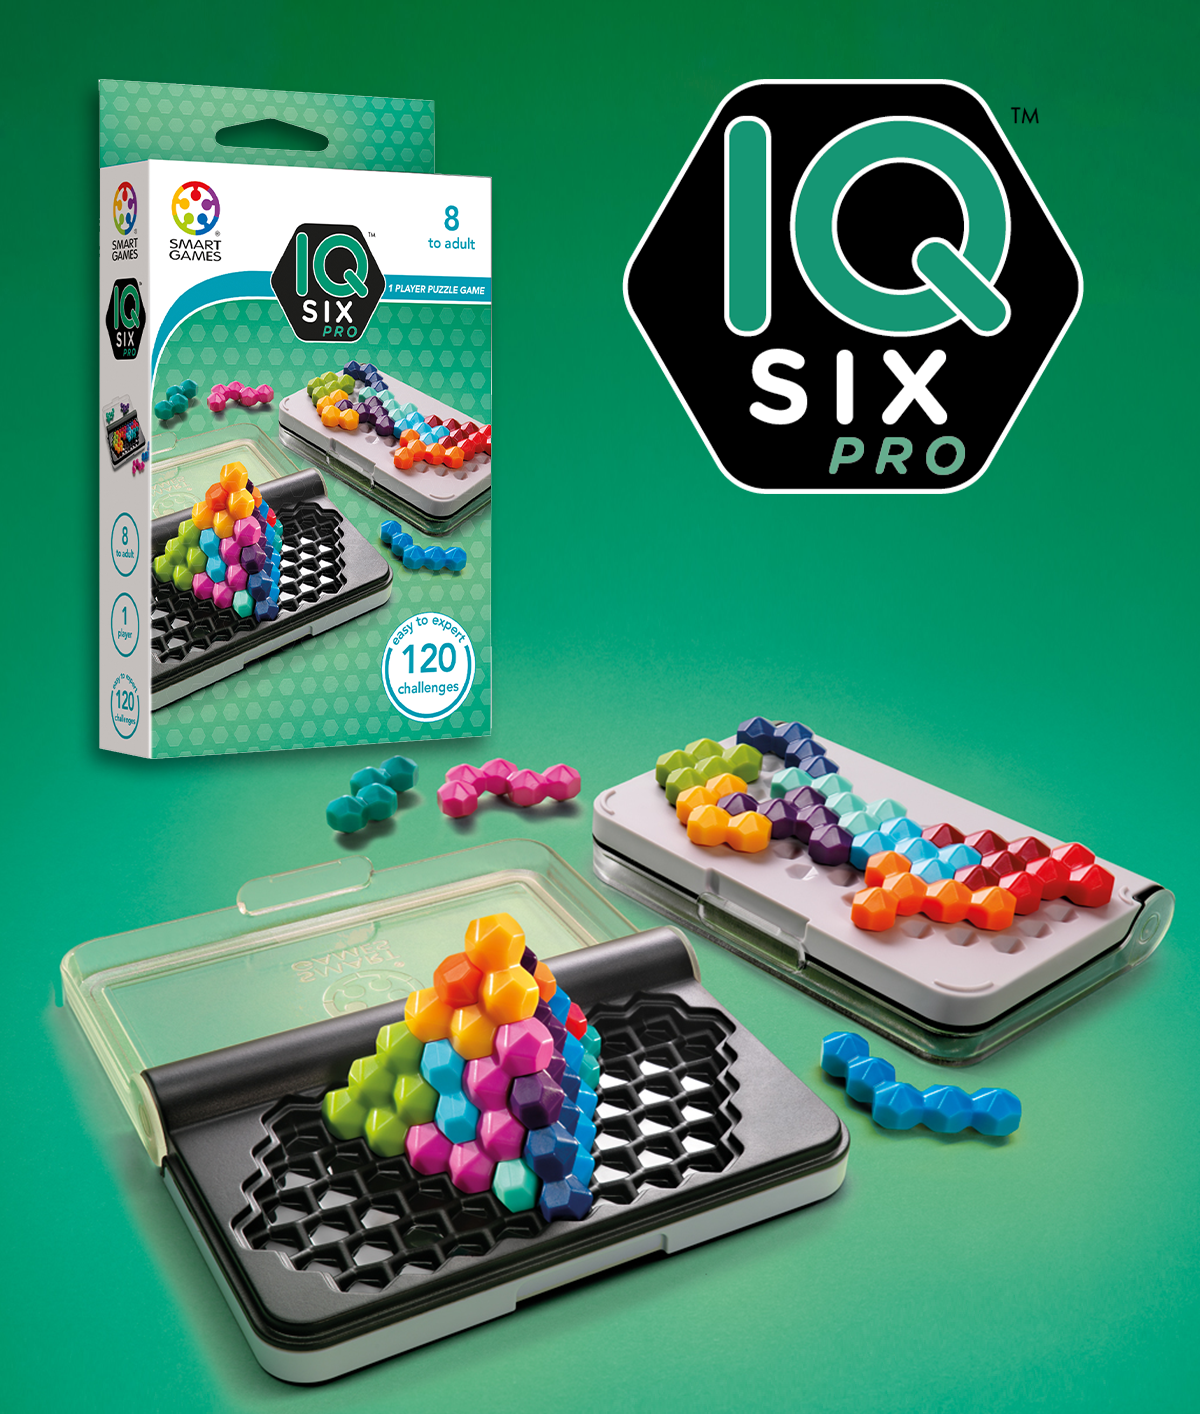 NUOVO SMART Games IQ ENIGMISTICA Pro con 101 PROGRESSIVE sfide età 6 